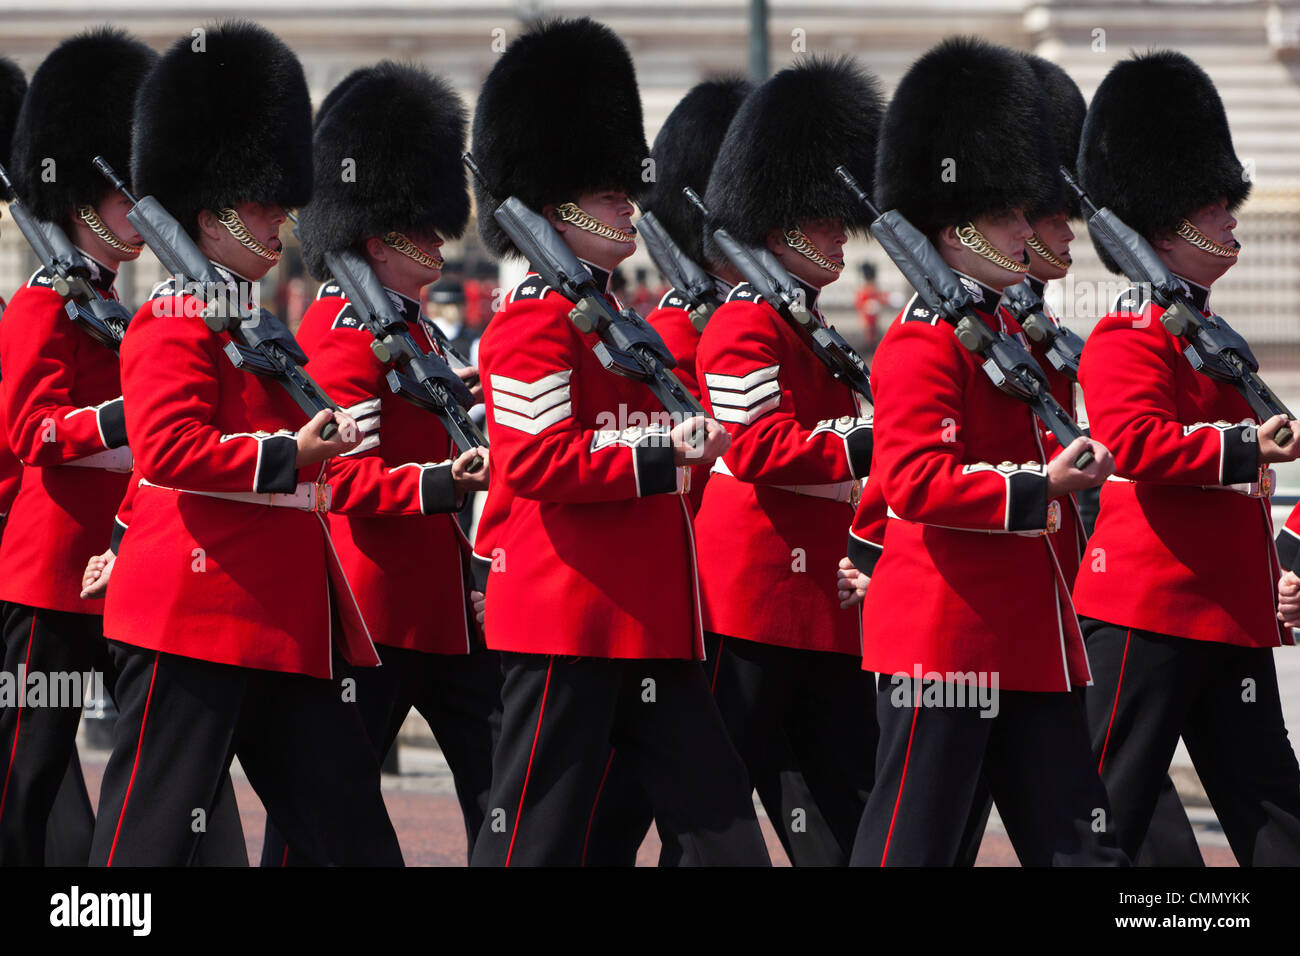 Scots Guards passé marche du Palais de Buckingham, de répétition pour la parade la couleur, Londres, Angleterre, Royaume-Uni, Europe Banque D'Images